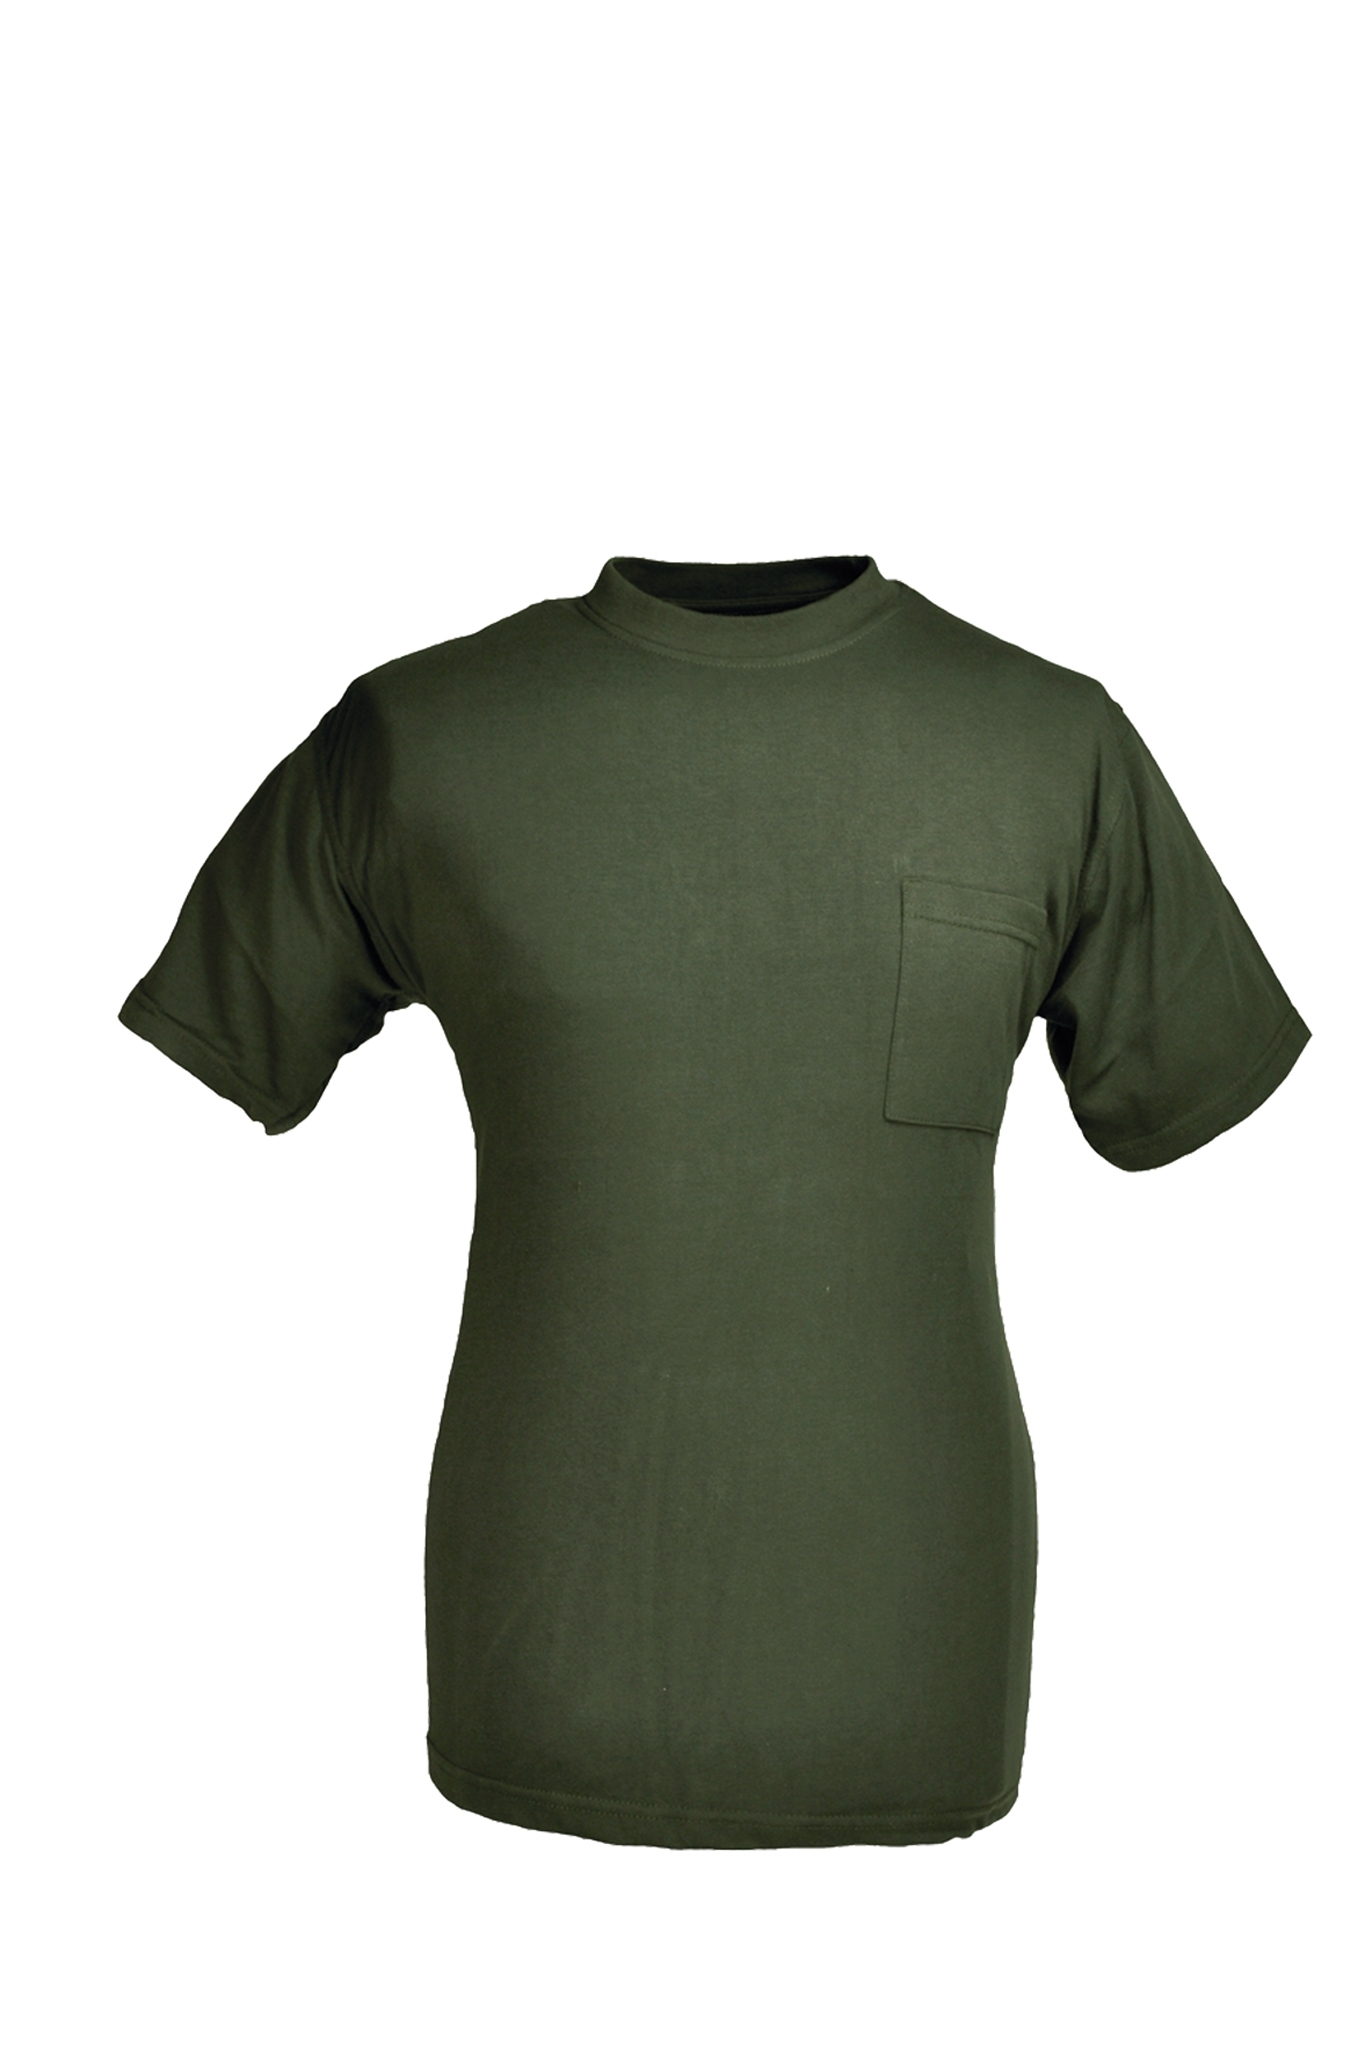 Rundhals T-Shirt oliv Gr.S 10227843